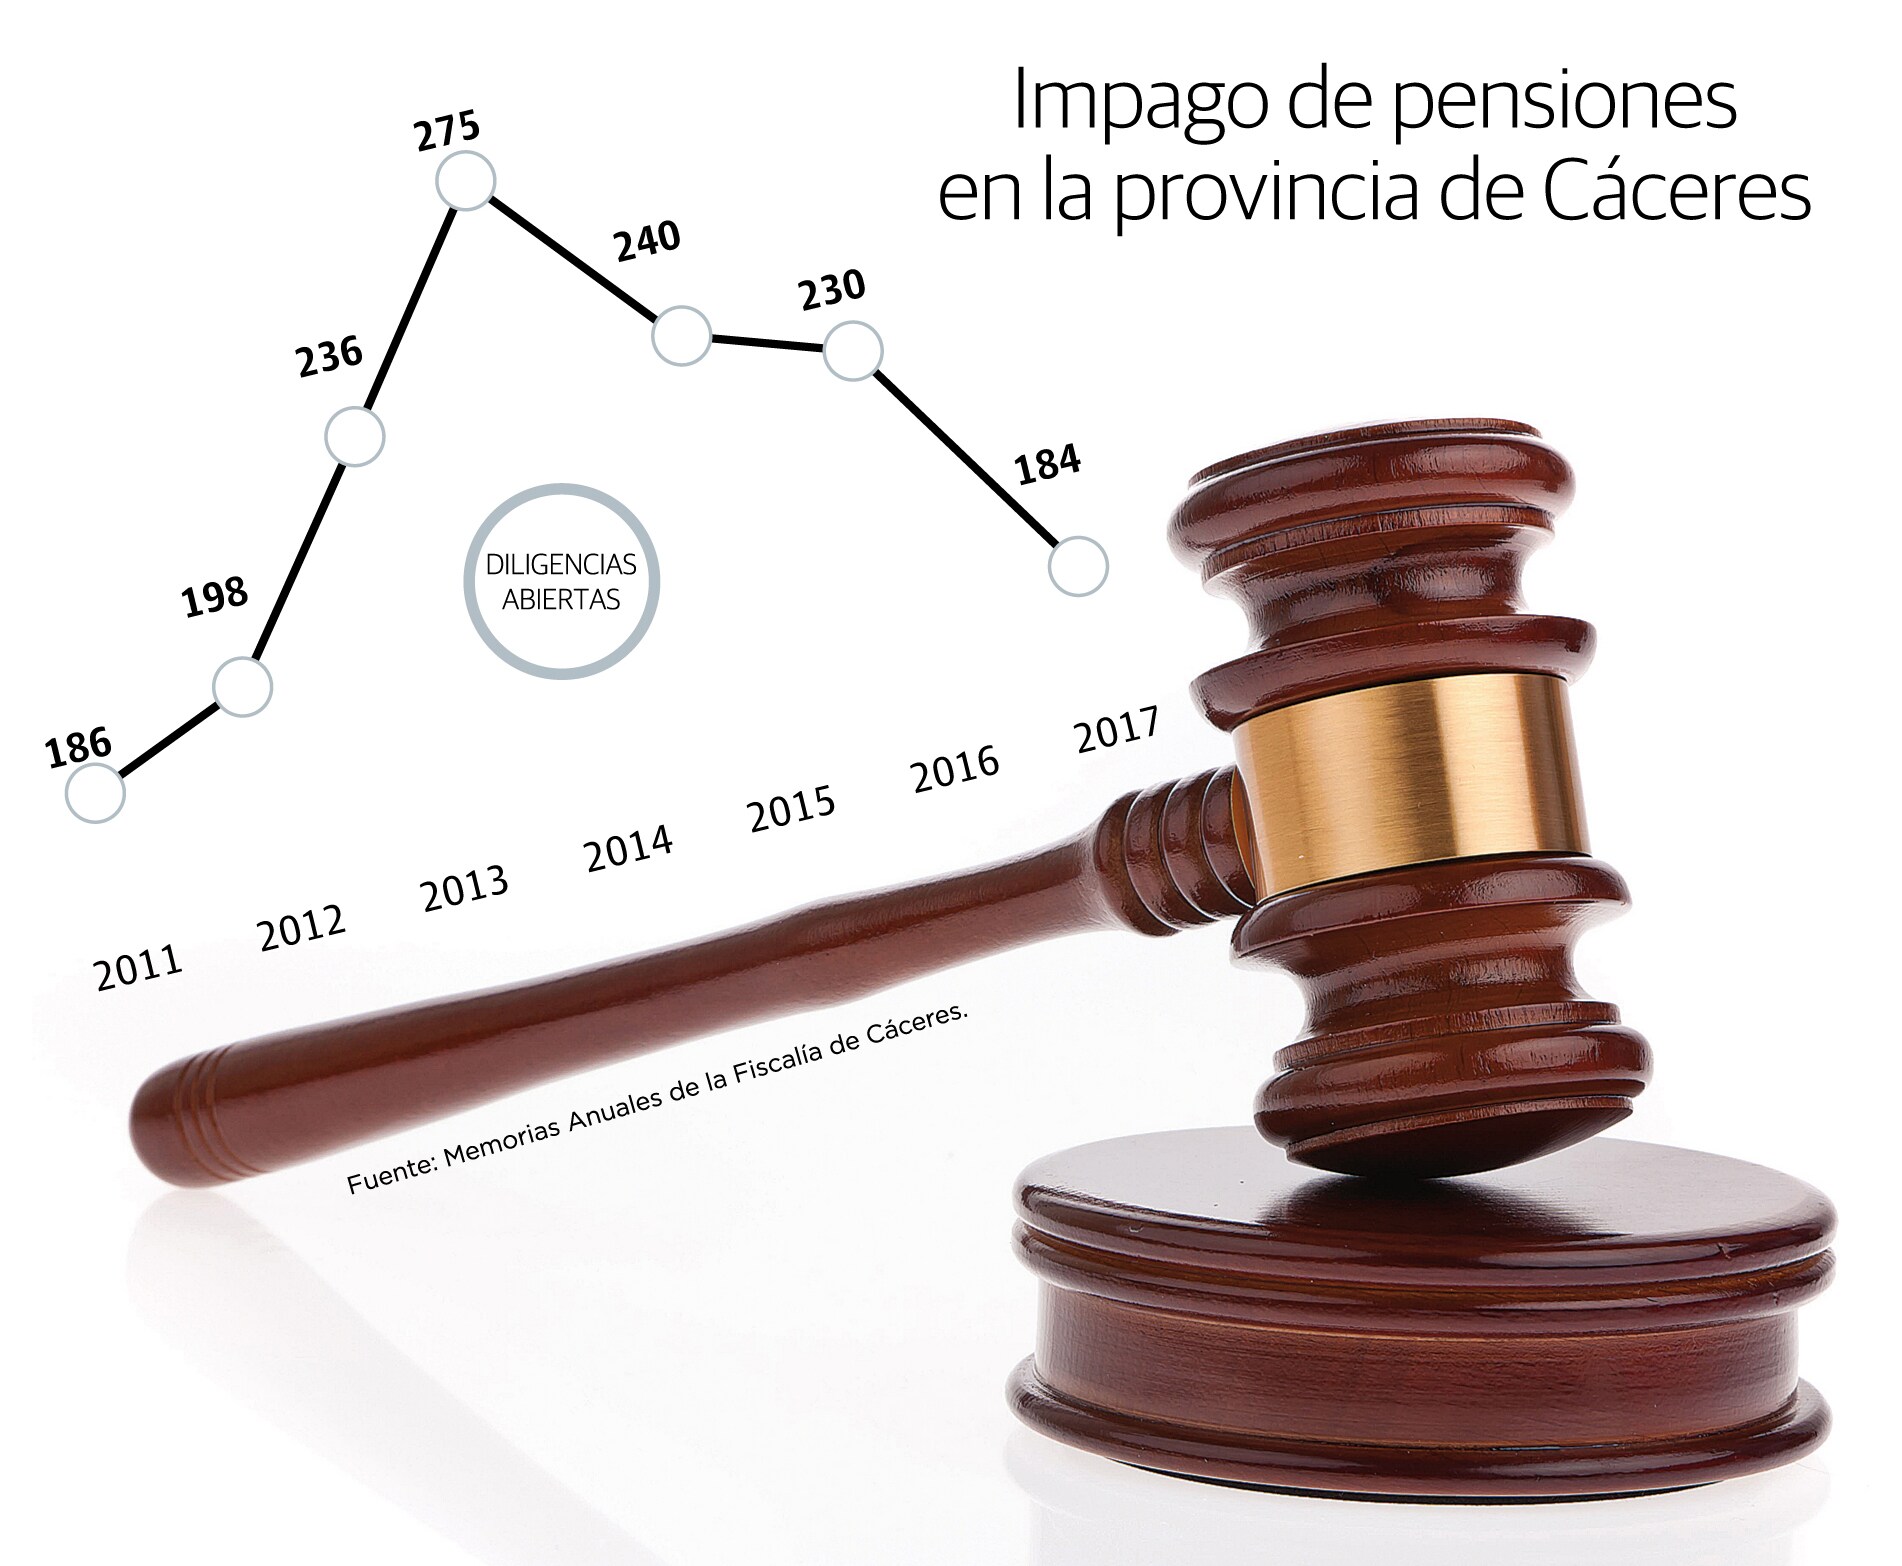 Impago de pensiones en la provincia de Cáceres